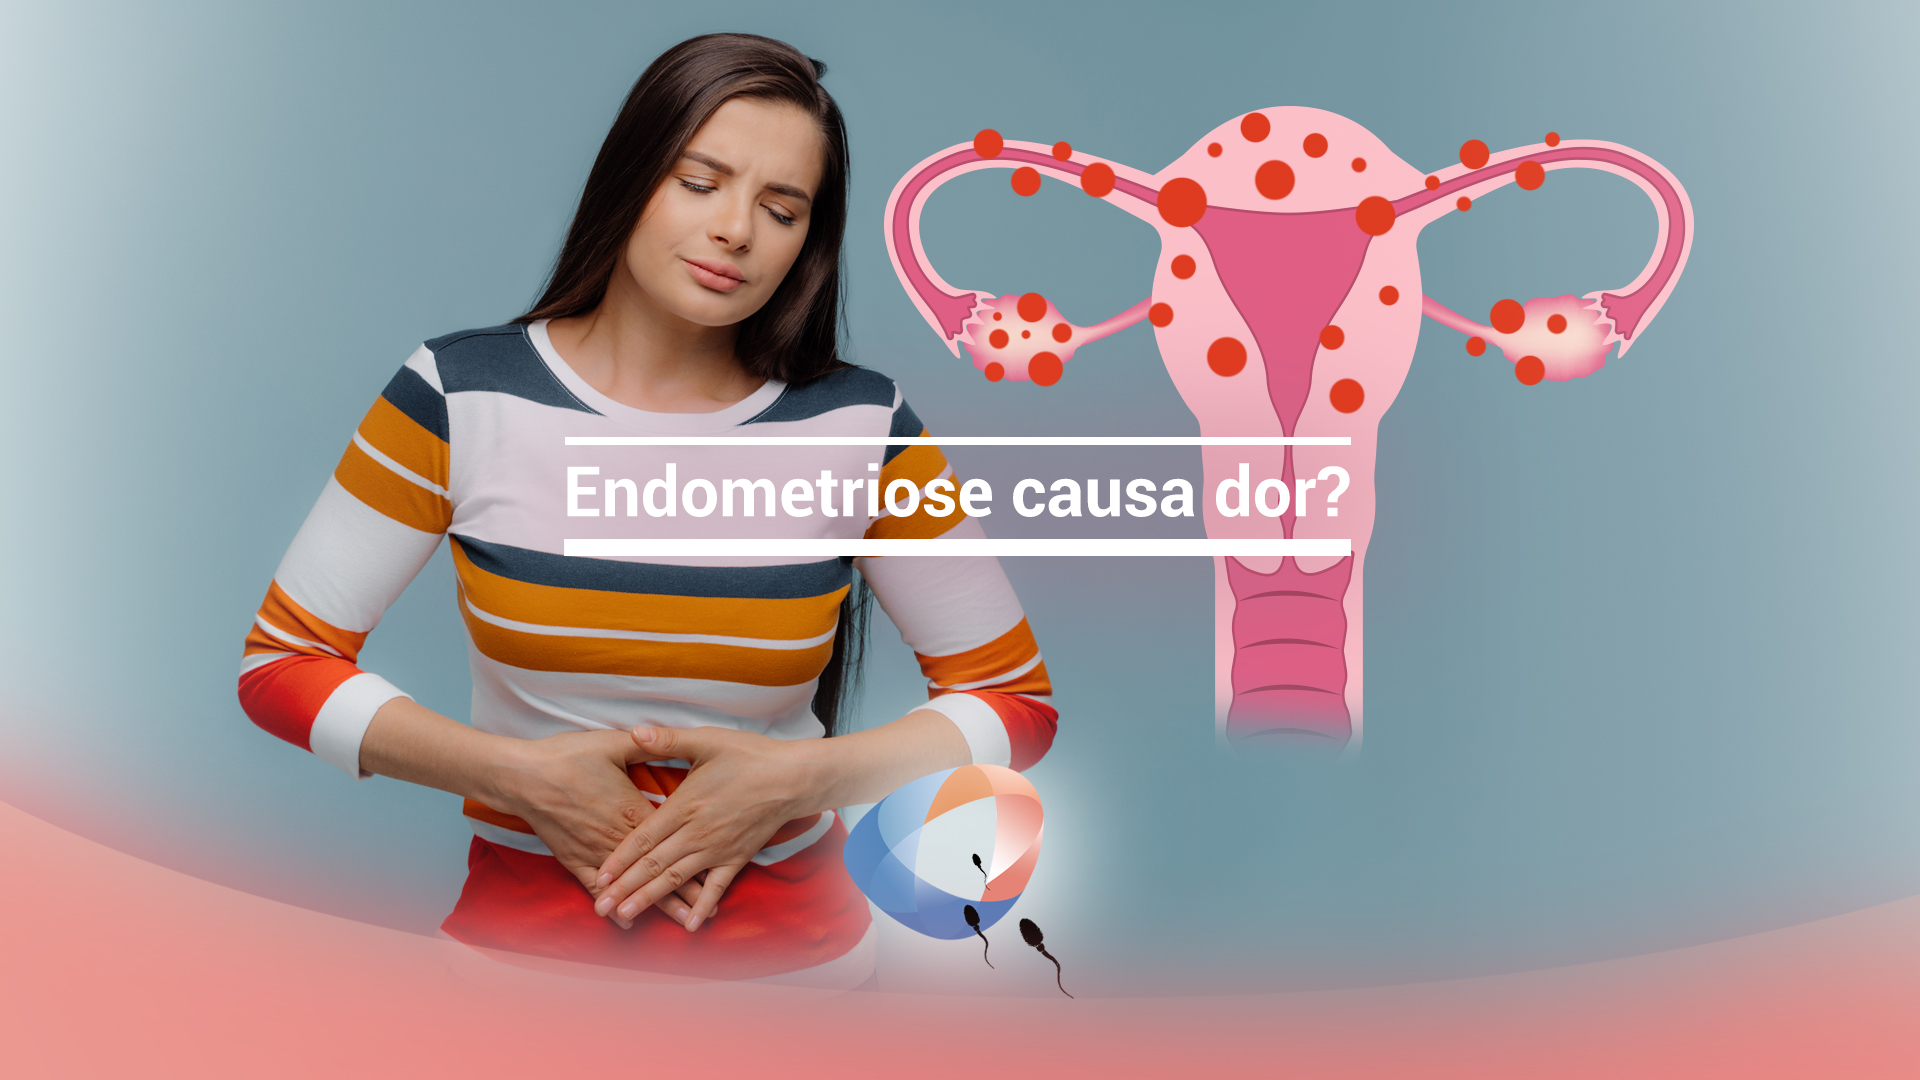 Endometriose causa dor?